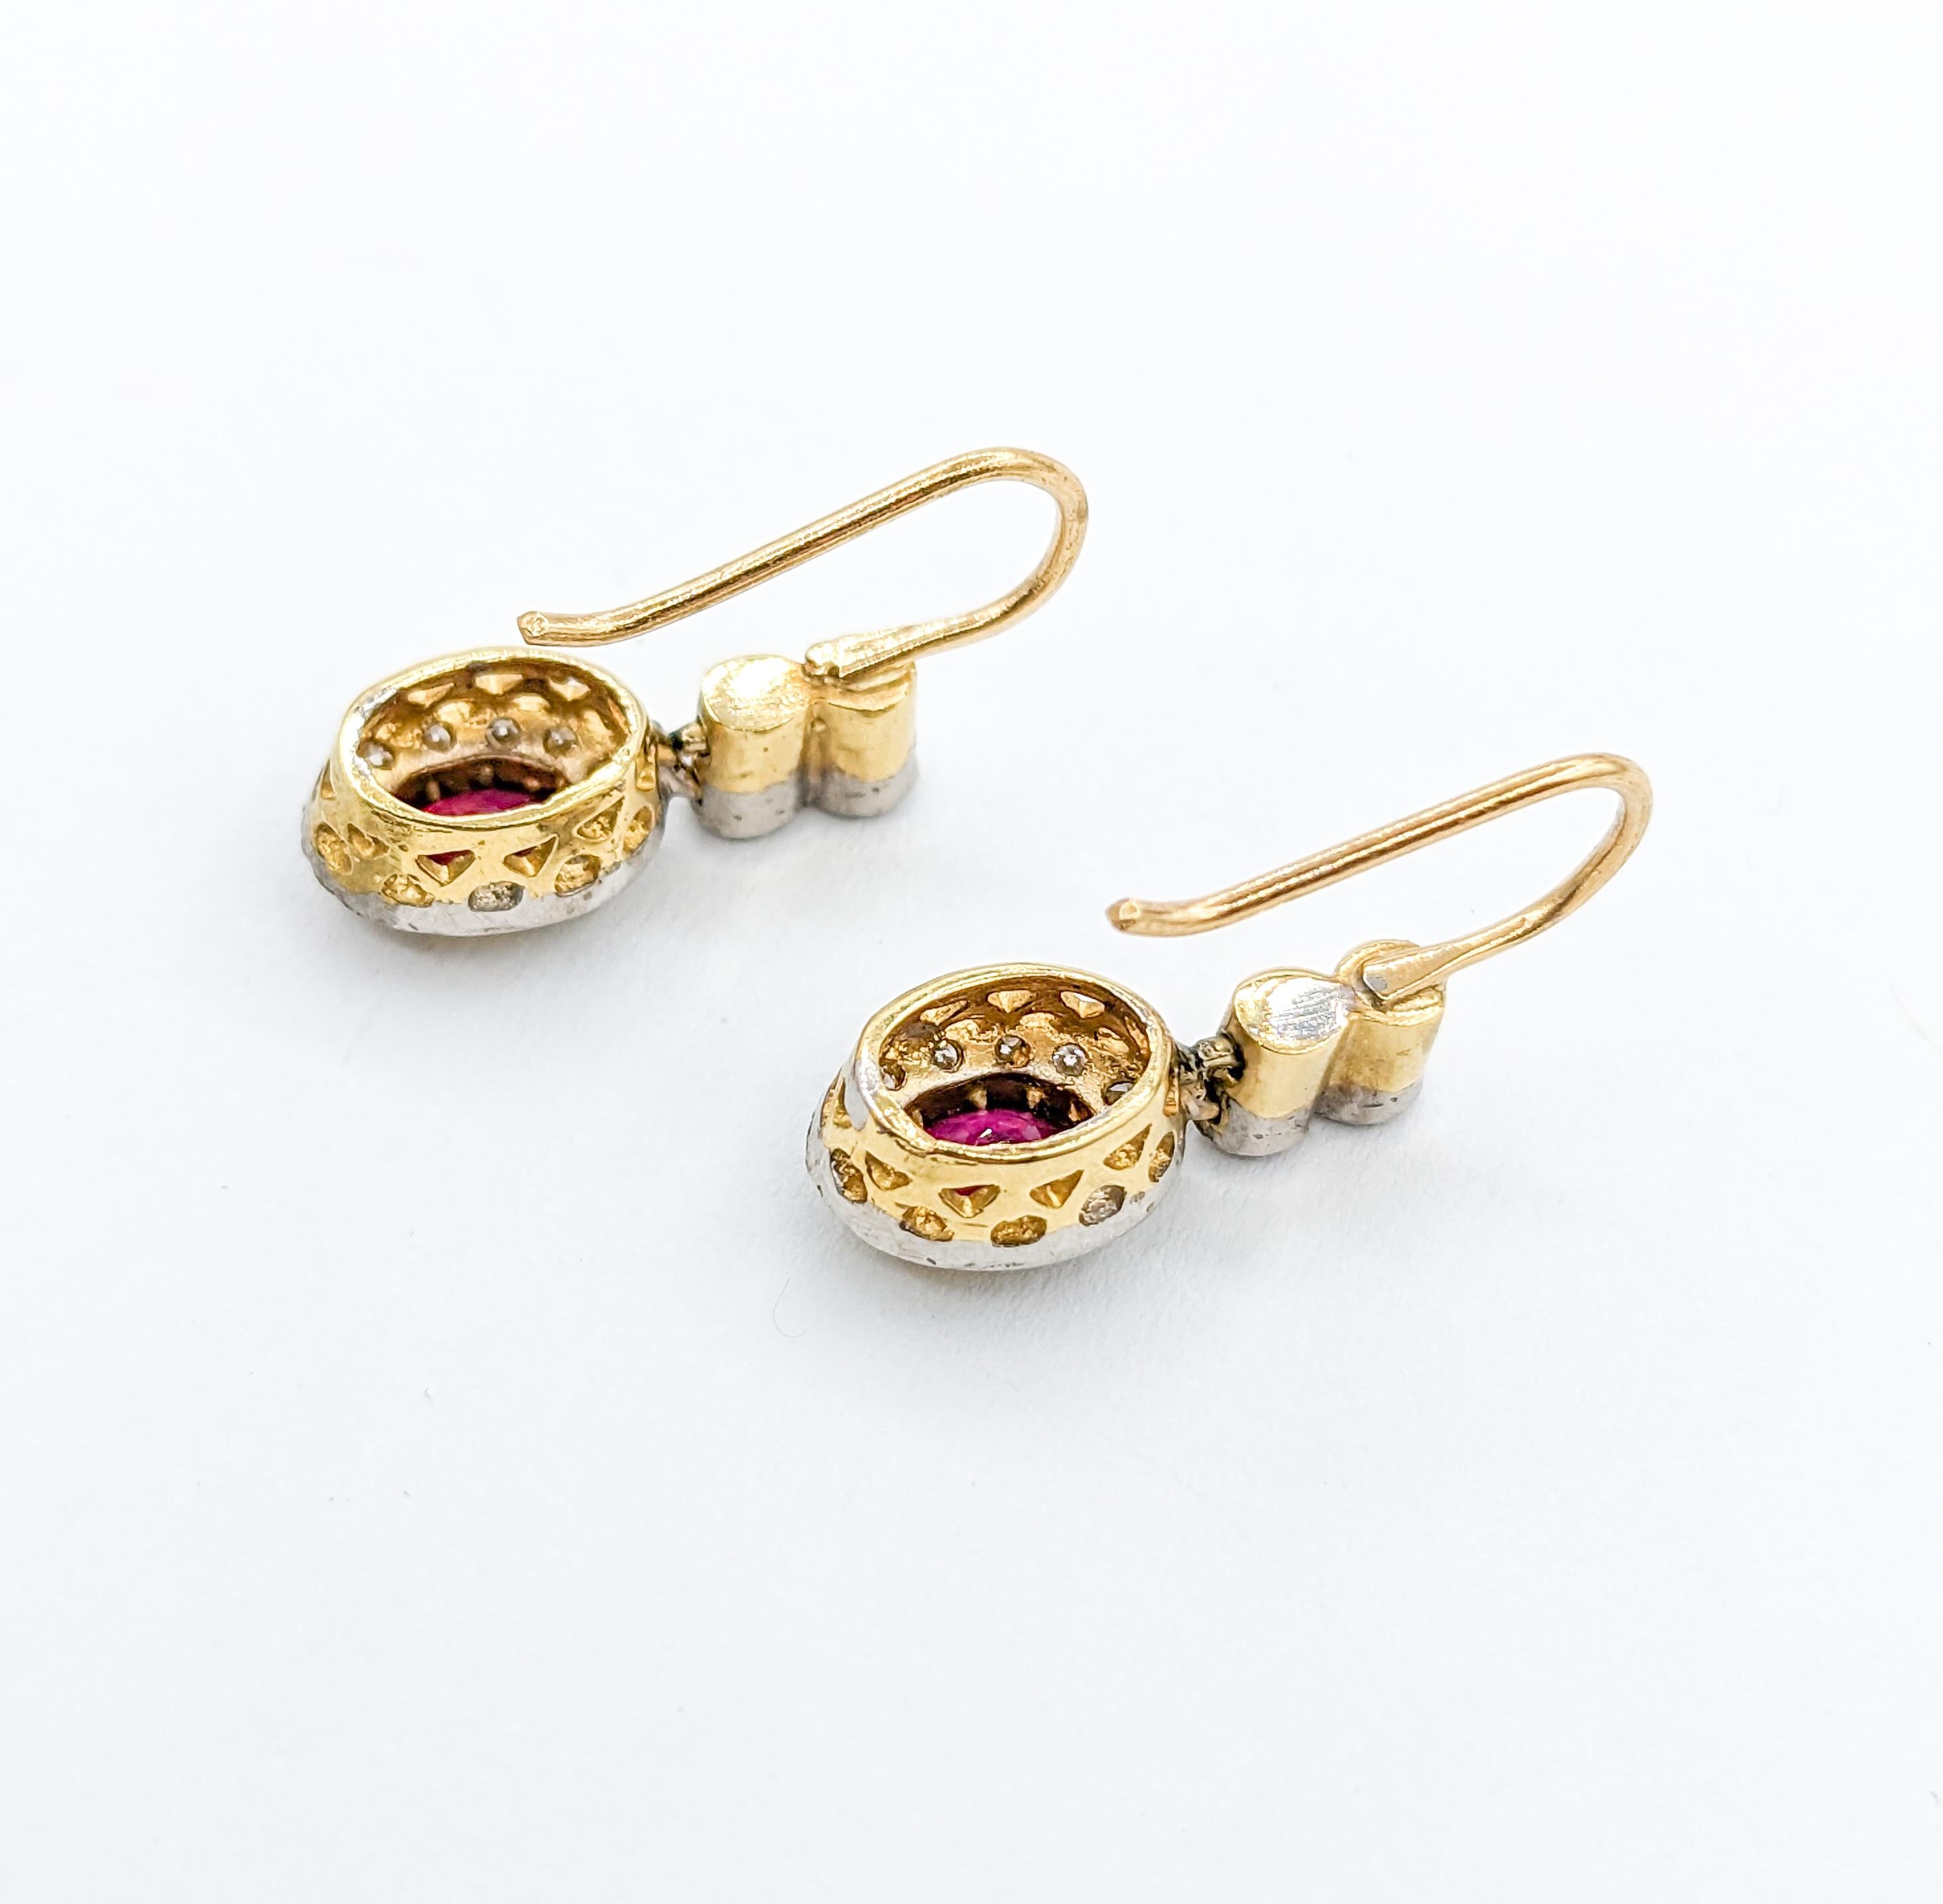 Anmutige 18k Rubin & Diamant zweifarbige Ohrringe mit Haken

Erhöhen Sie Ihre Eleganz mit unseren exquisiten Ohrringen, die sorgfältig aus 18 Karat Weiß- und Gelbgold gefertigt sind. Diese bezaubernden Ohrringe sind mit runden Diamanten von